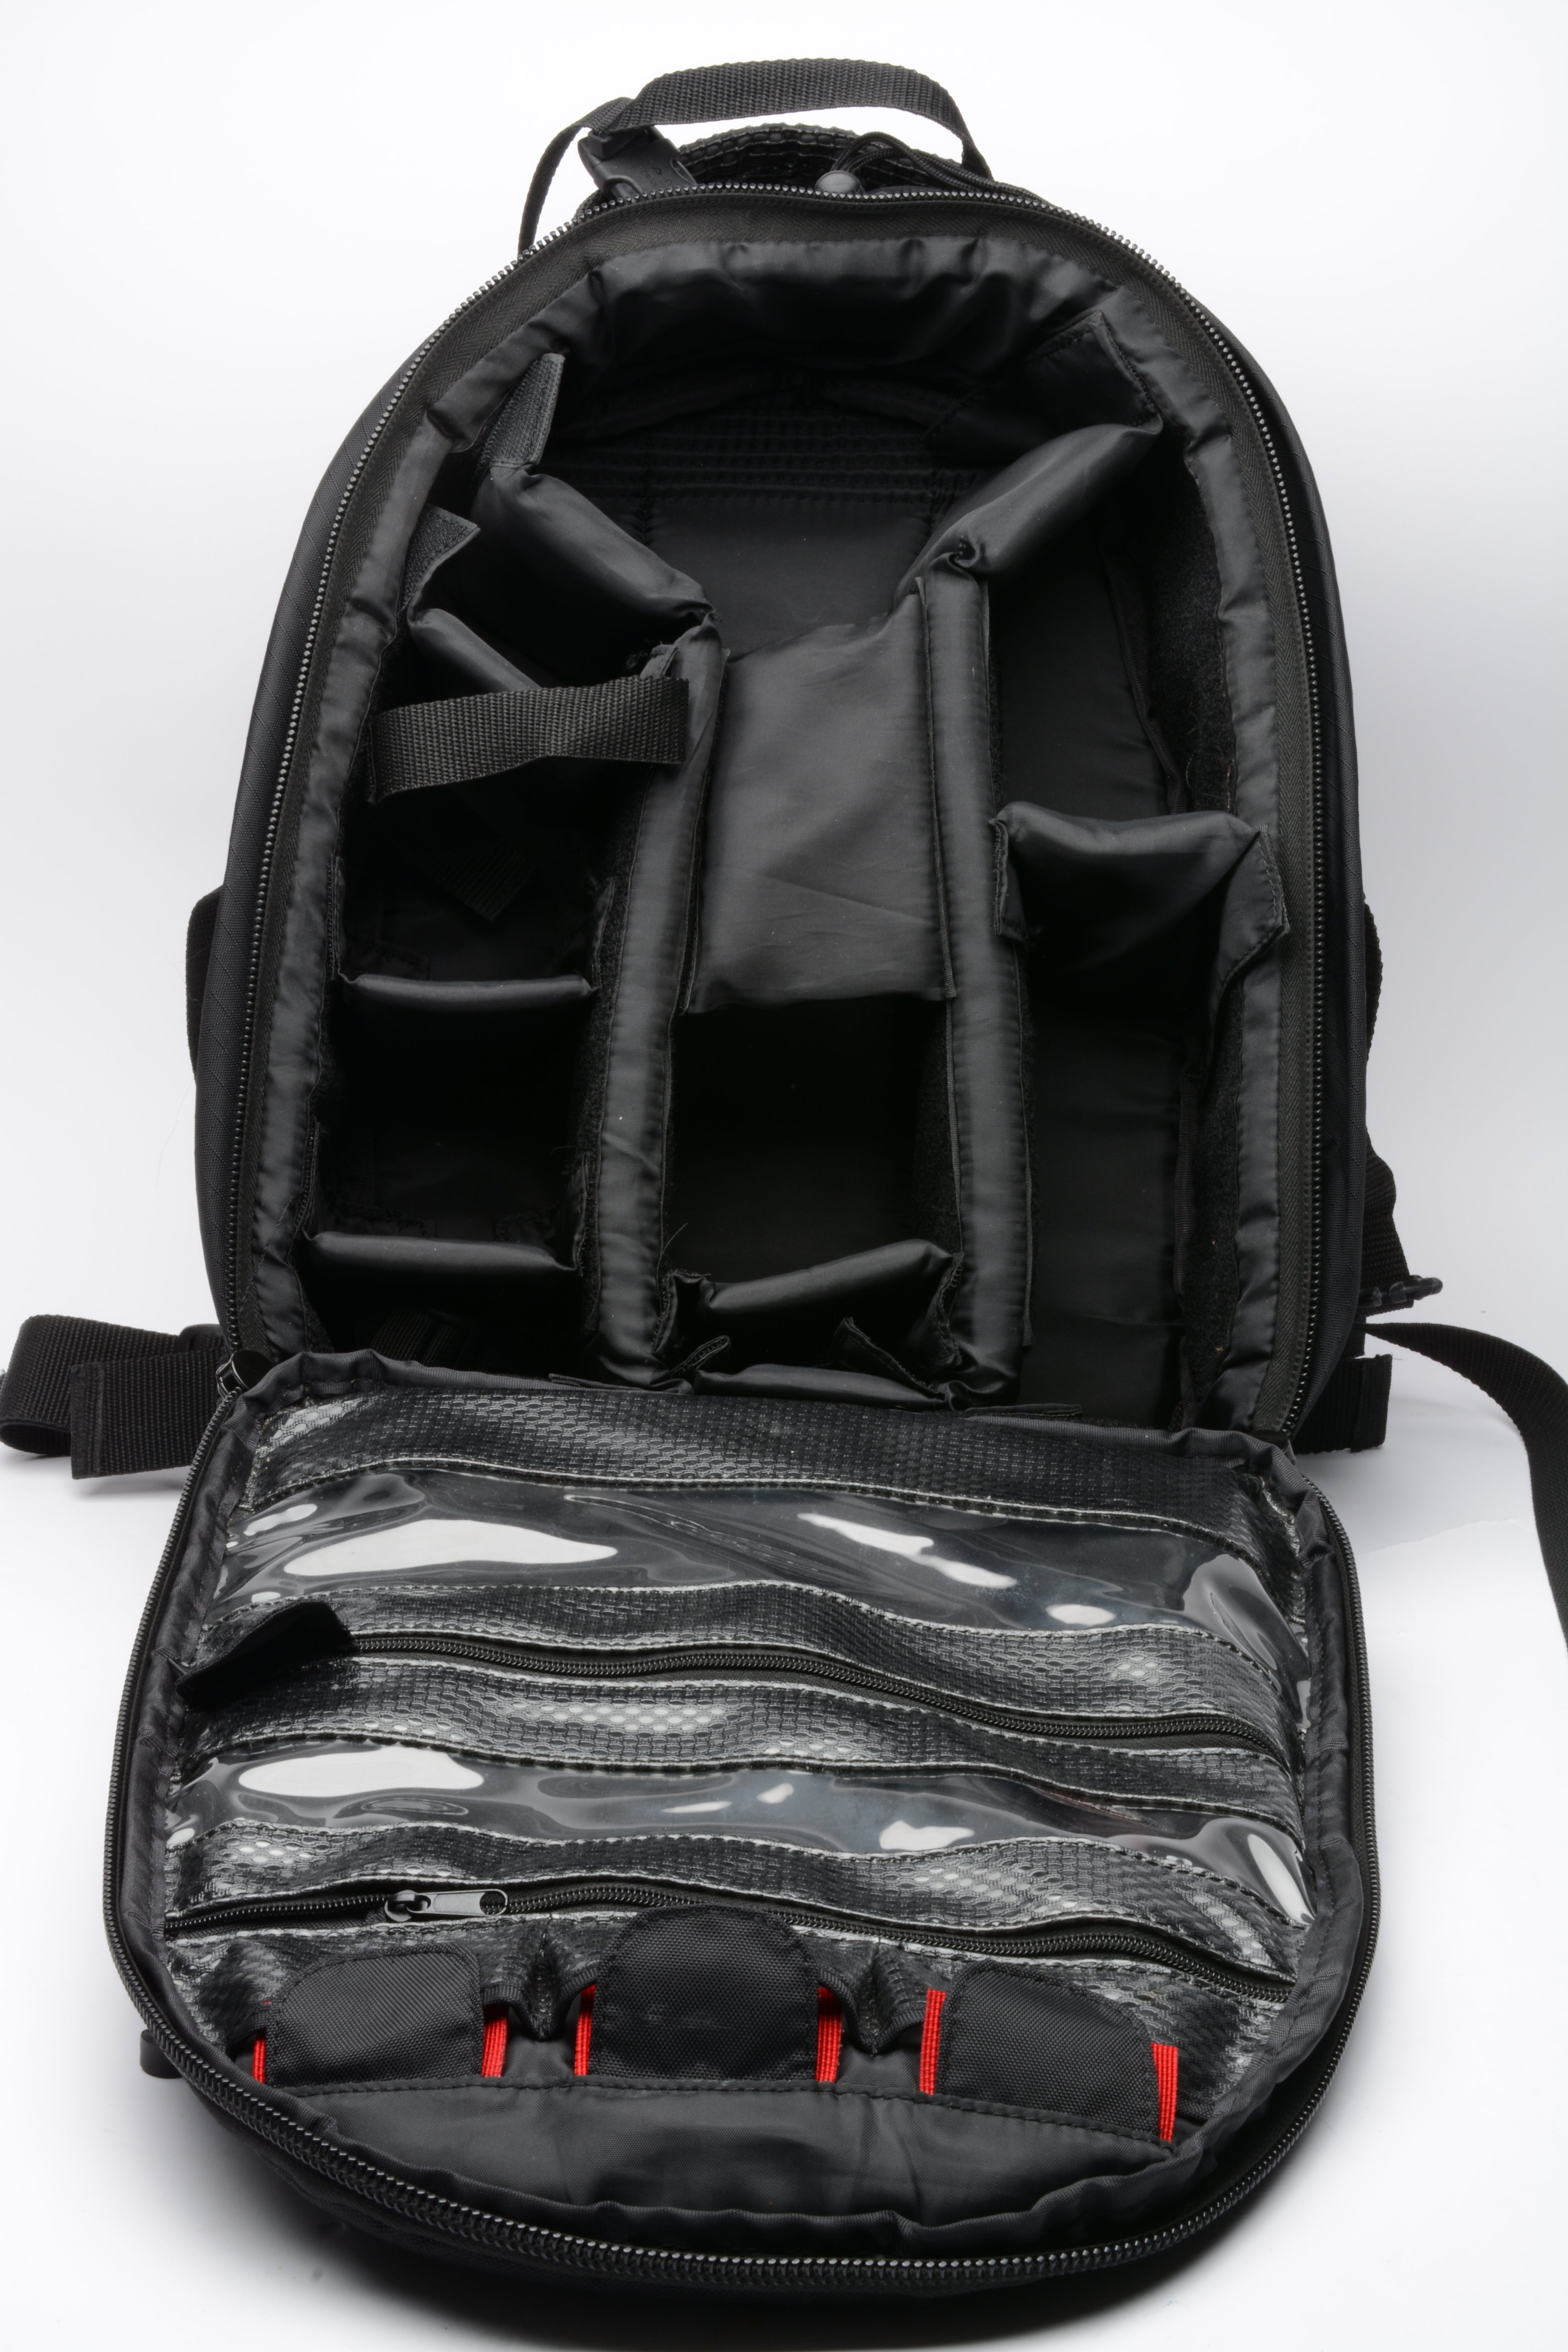 Tamrac 5375 Adventure 75 Backpack (Gray/Black), clean, nice